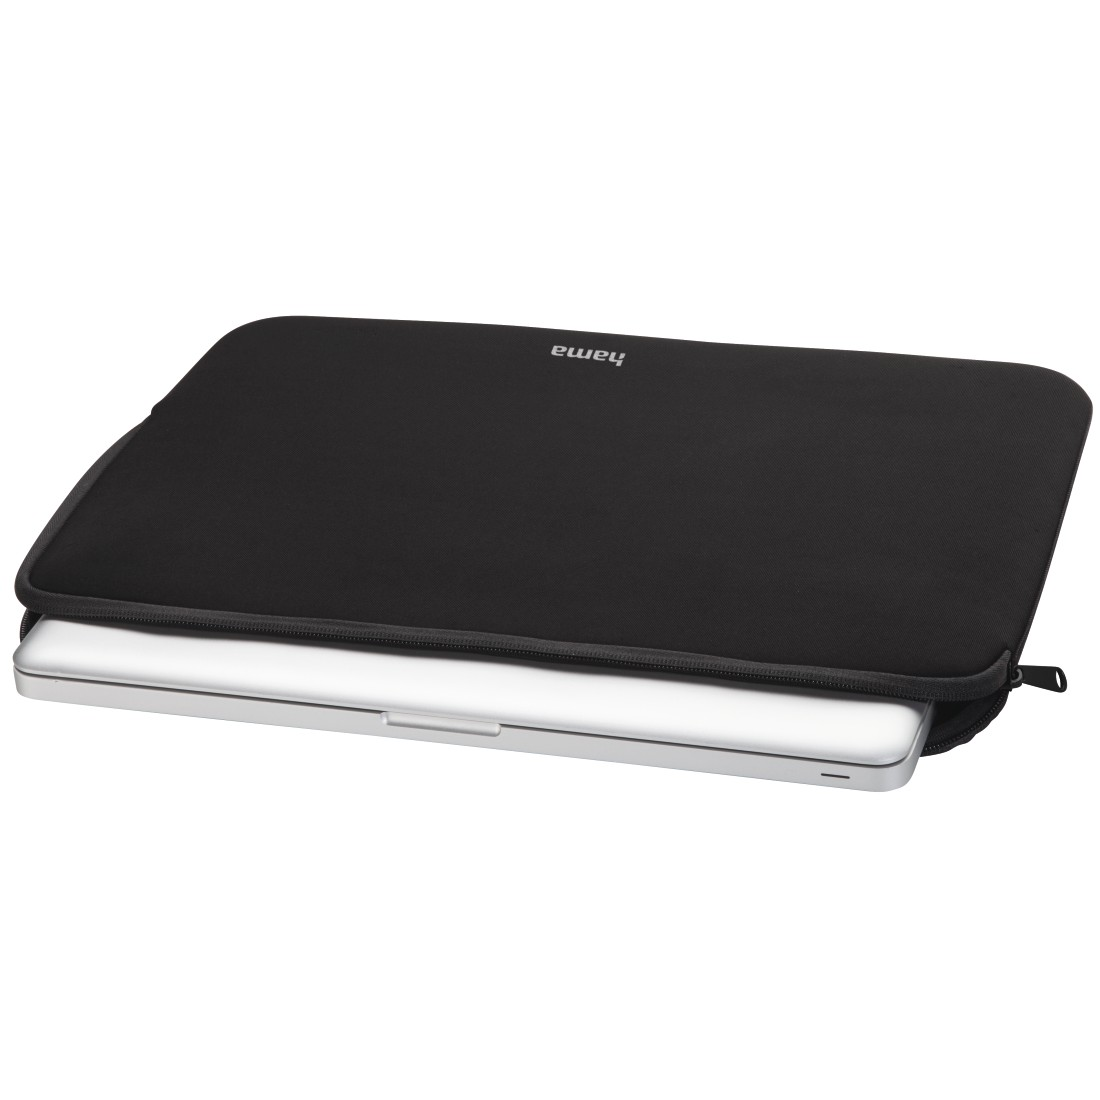 HAMA Neoprene Universal für Notebooktasche 15.6 Schwarz Zoll Neopren, Sleeve